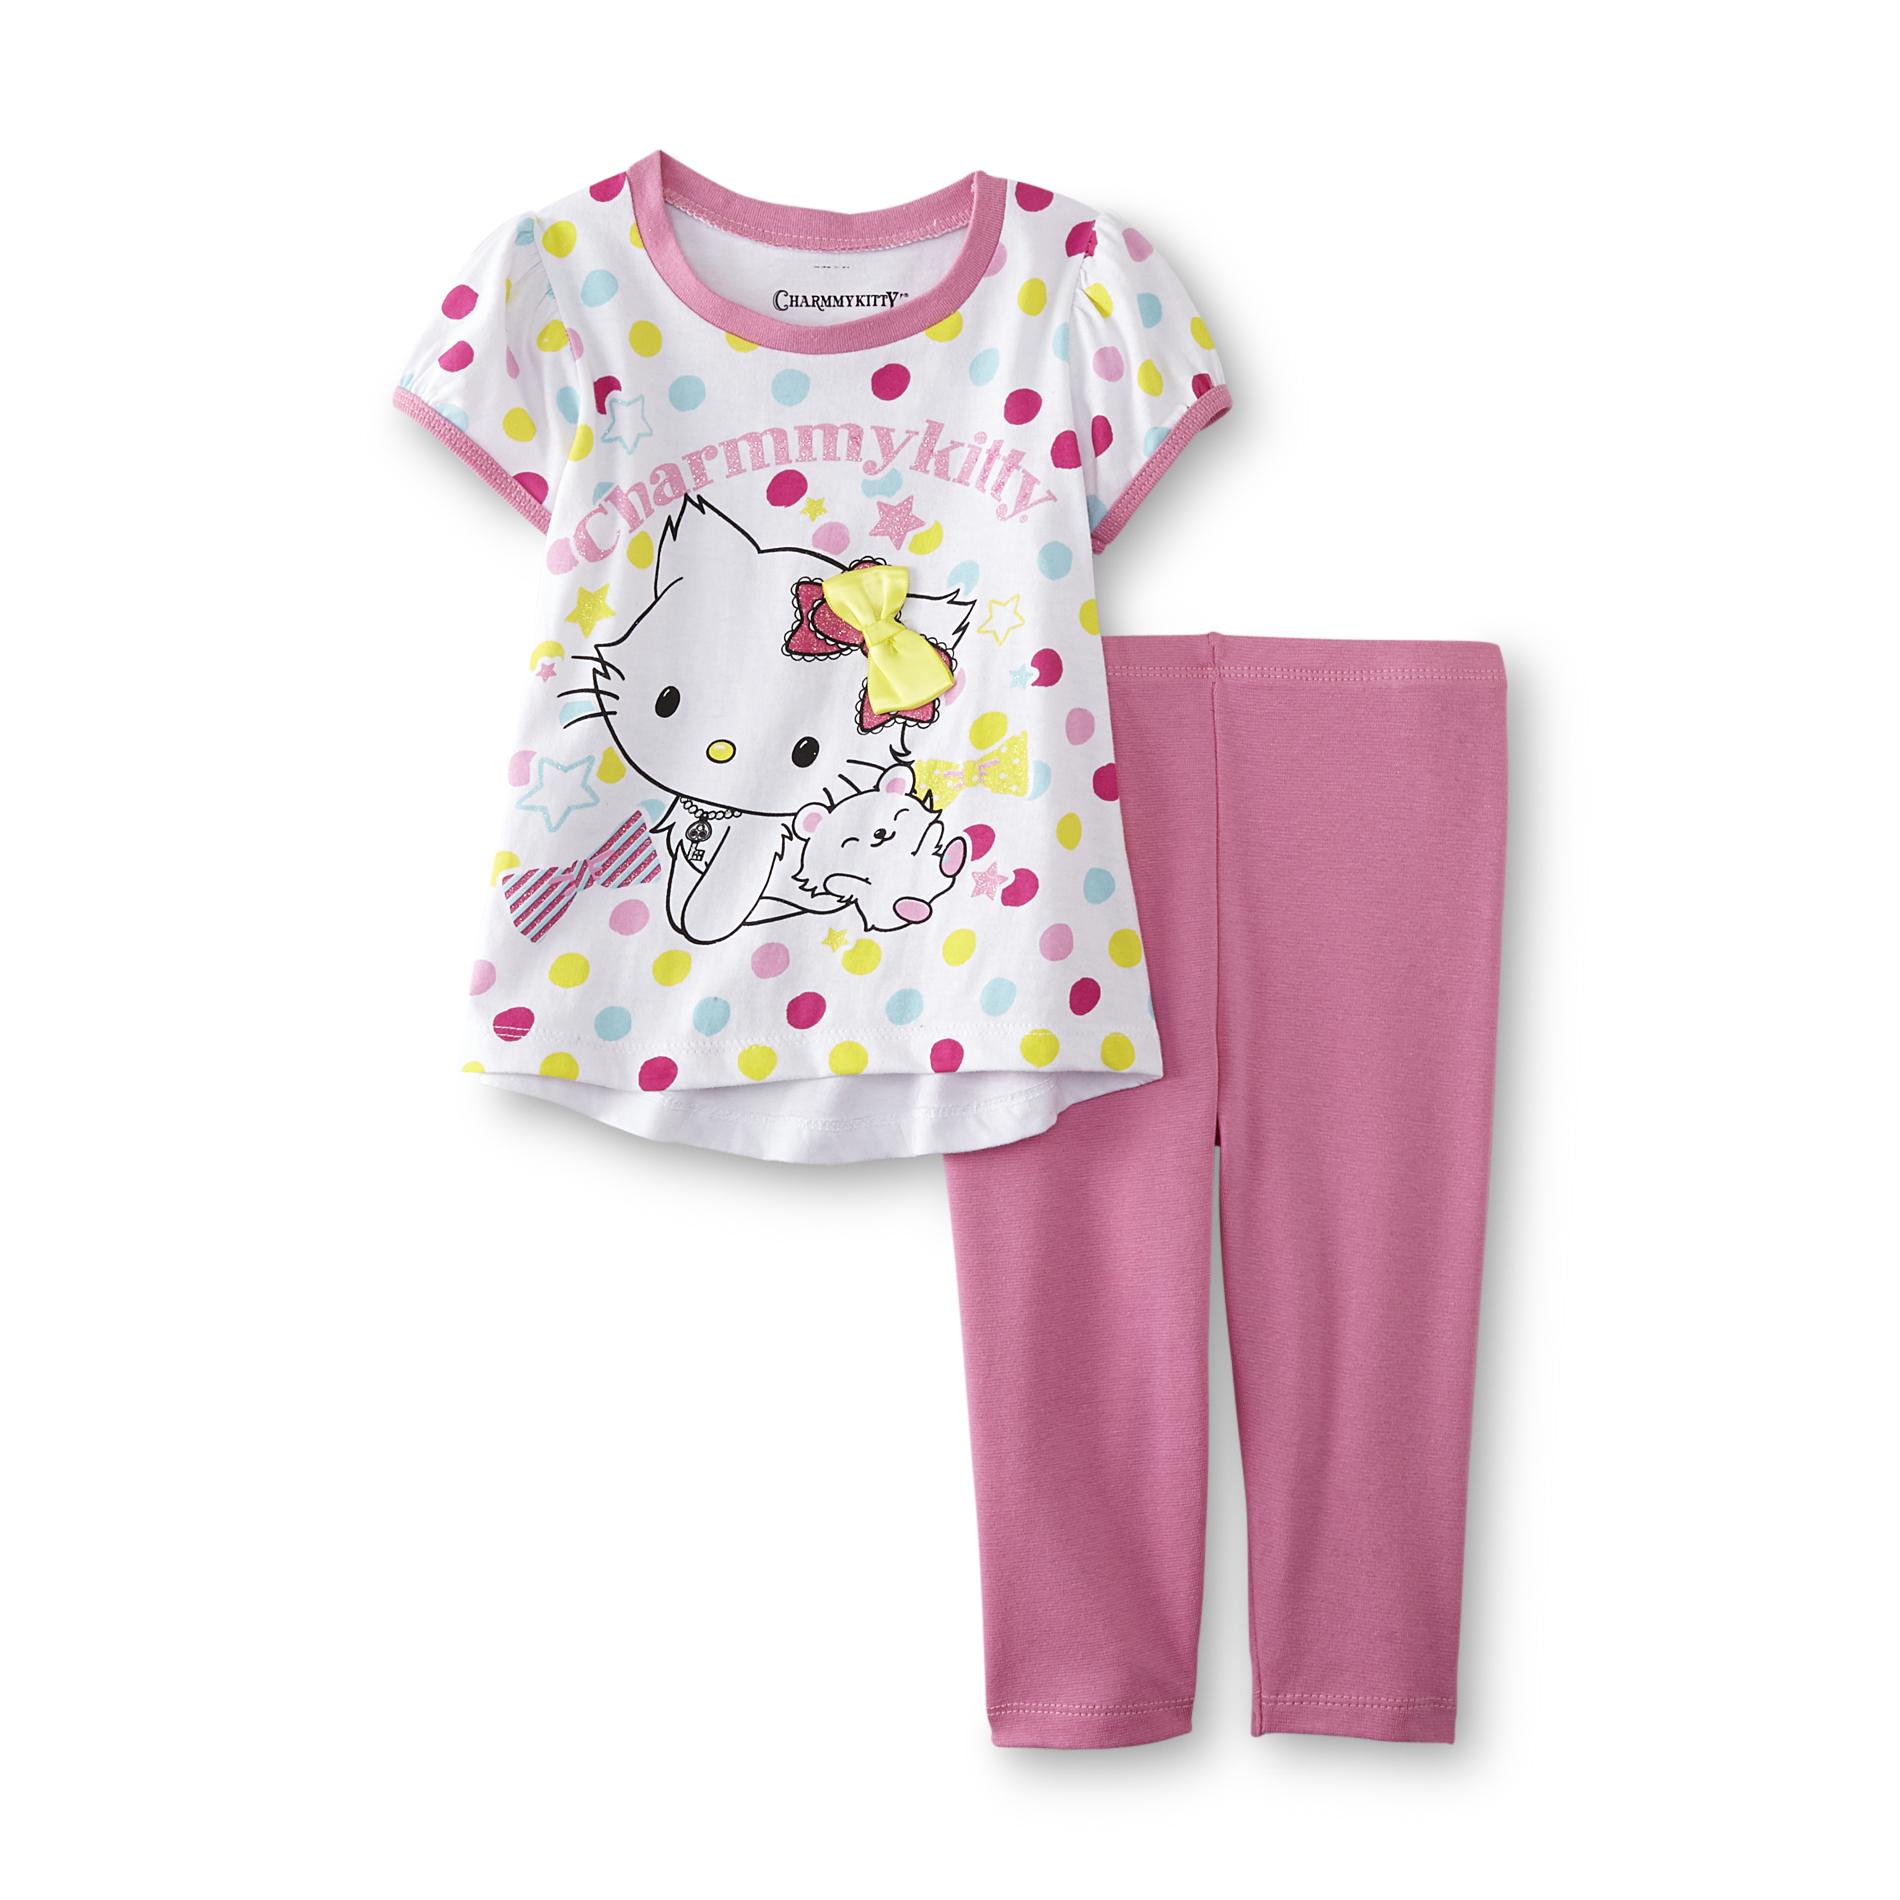 Sanrio Charmmykitty Infant & Toddler Girl's Graphic T-Shirt & Leggings